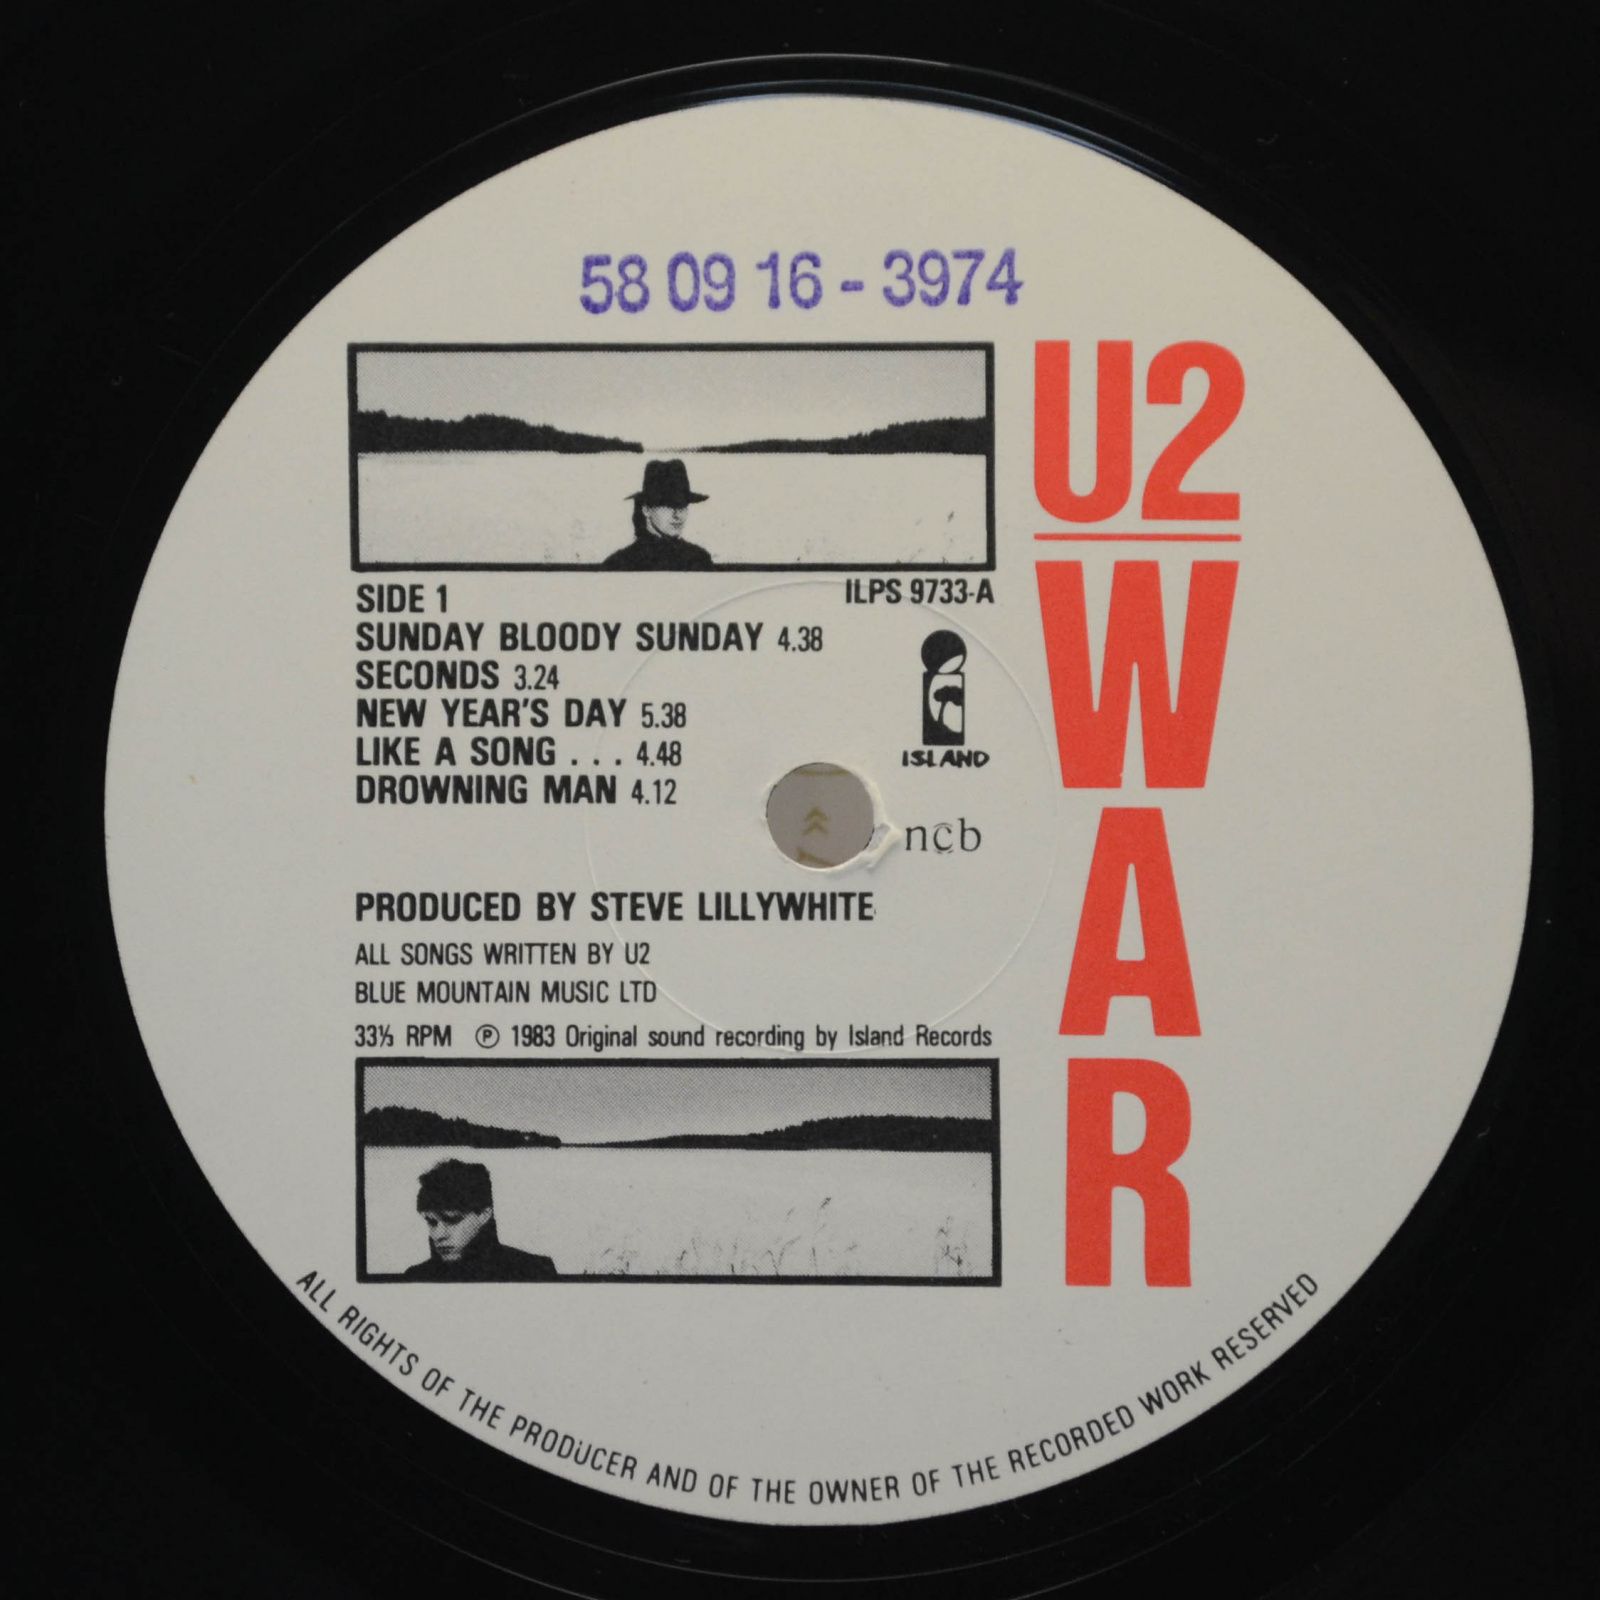 U2 — War, 1983